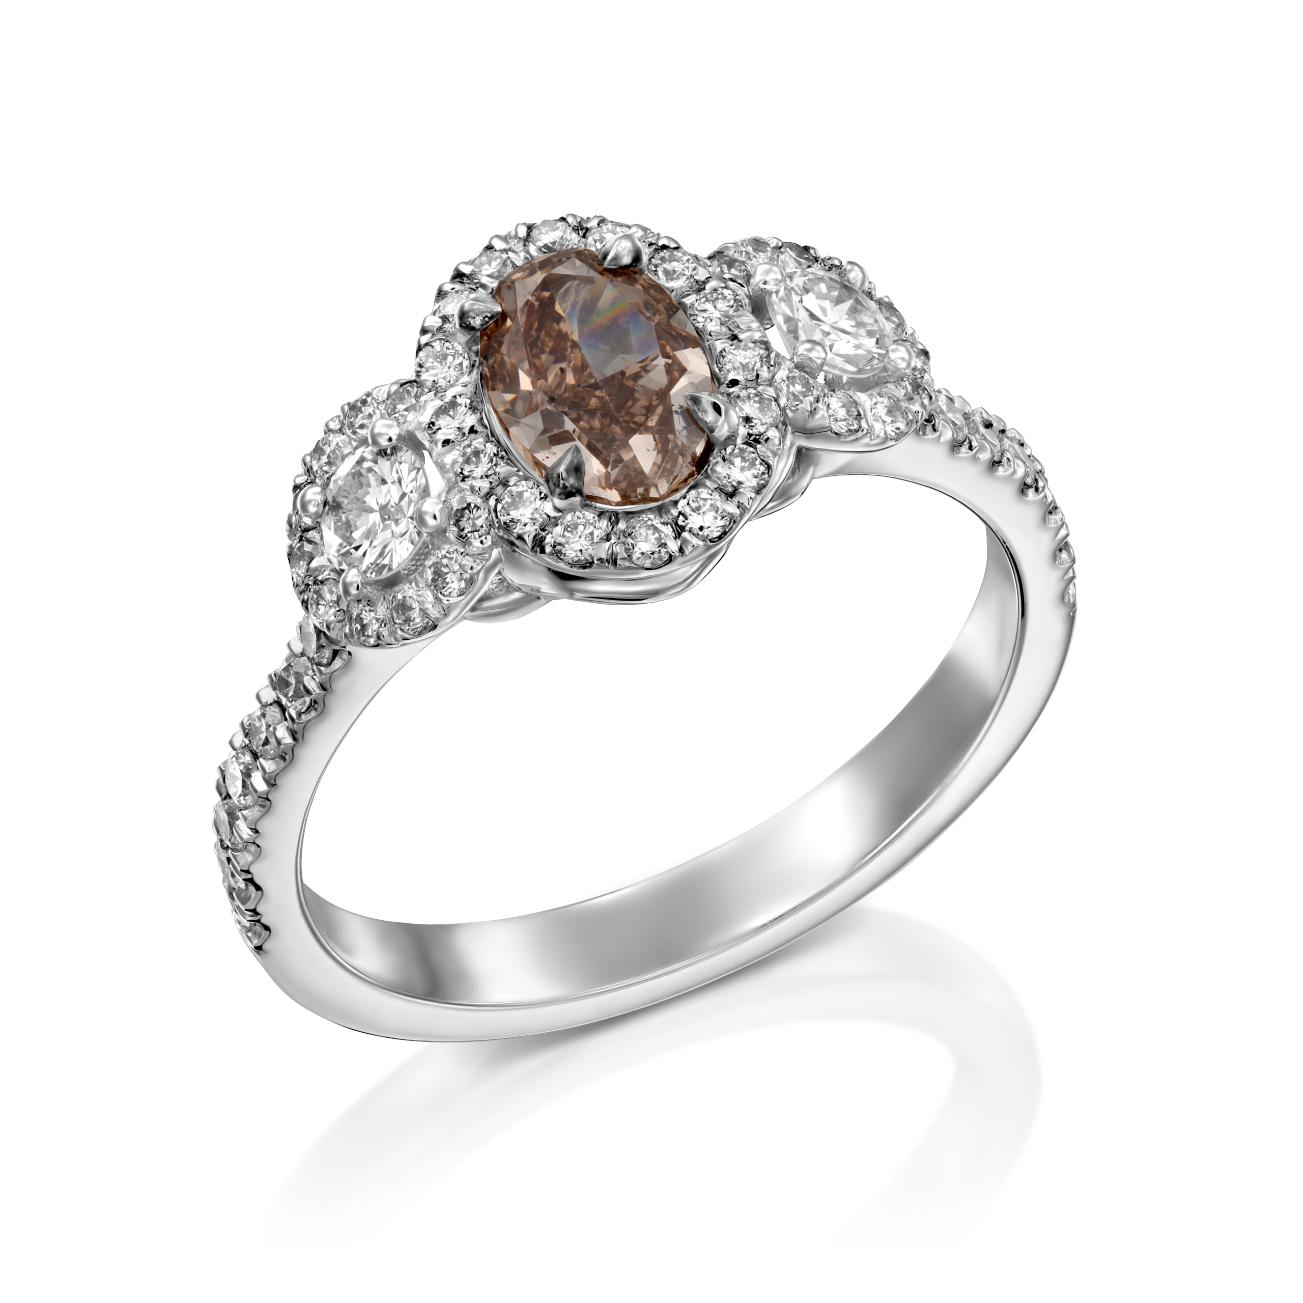 טבעת יהלומים דגם Fancy Brown Netta ב-31% הנחה הכוללת אבן חן חומה מרכזית מוקפת יהלומים נוצצים, עם יהלומים נוספים המעטרים את הרצועה.